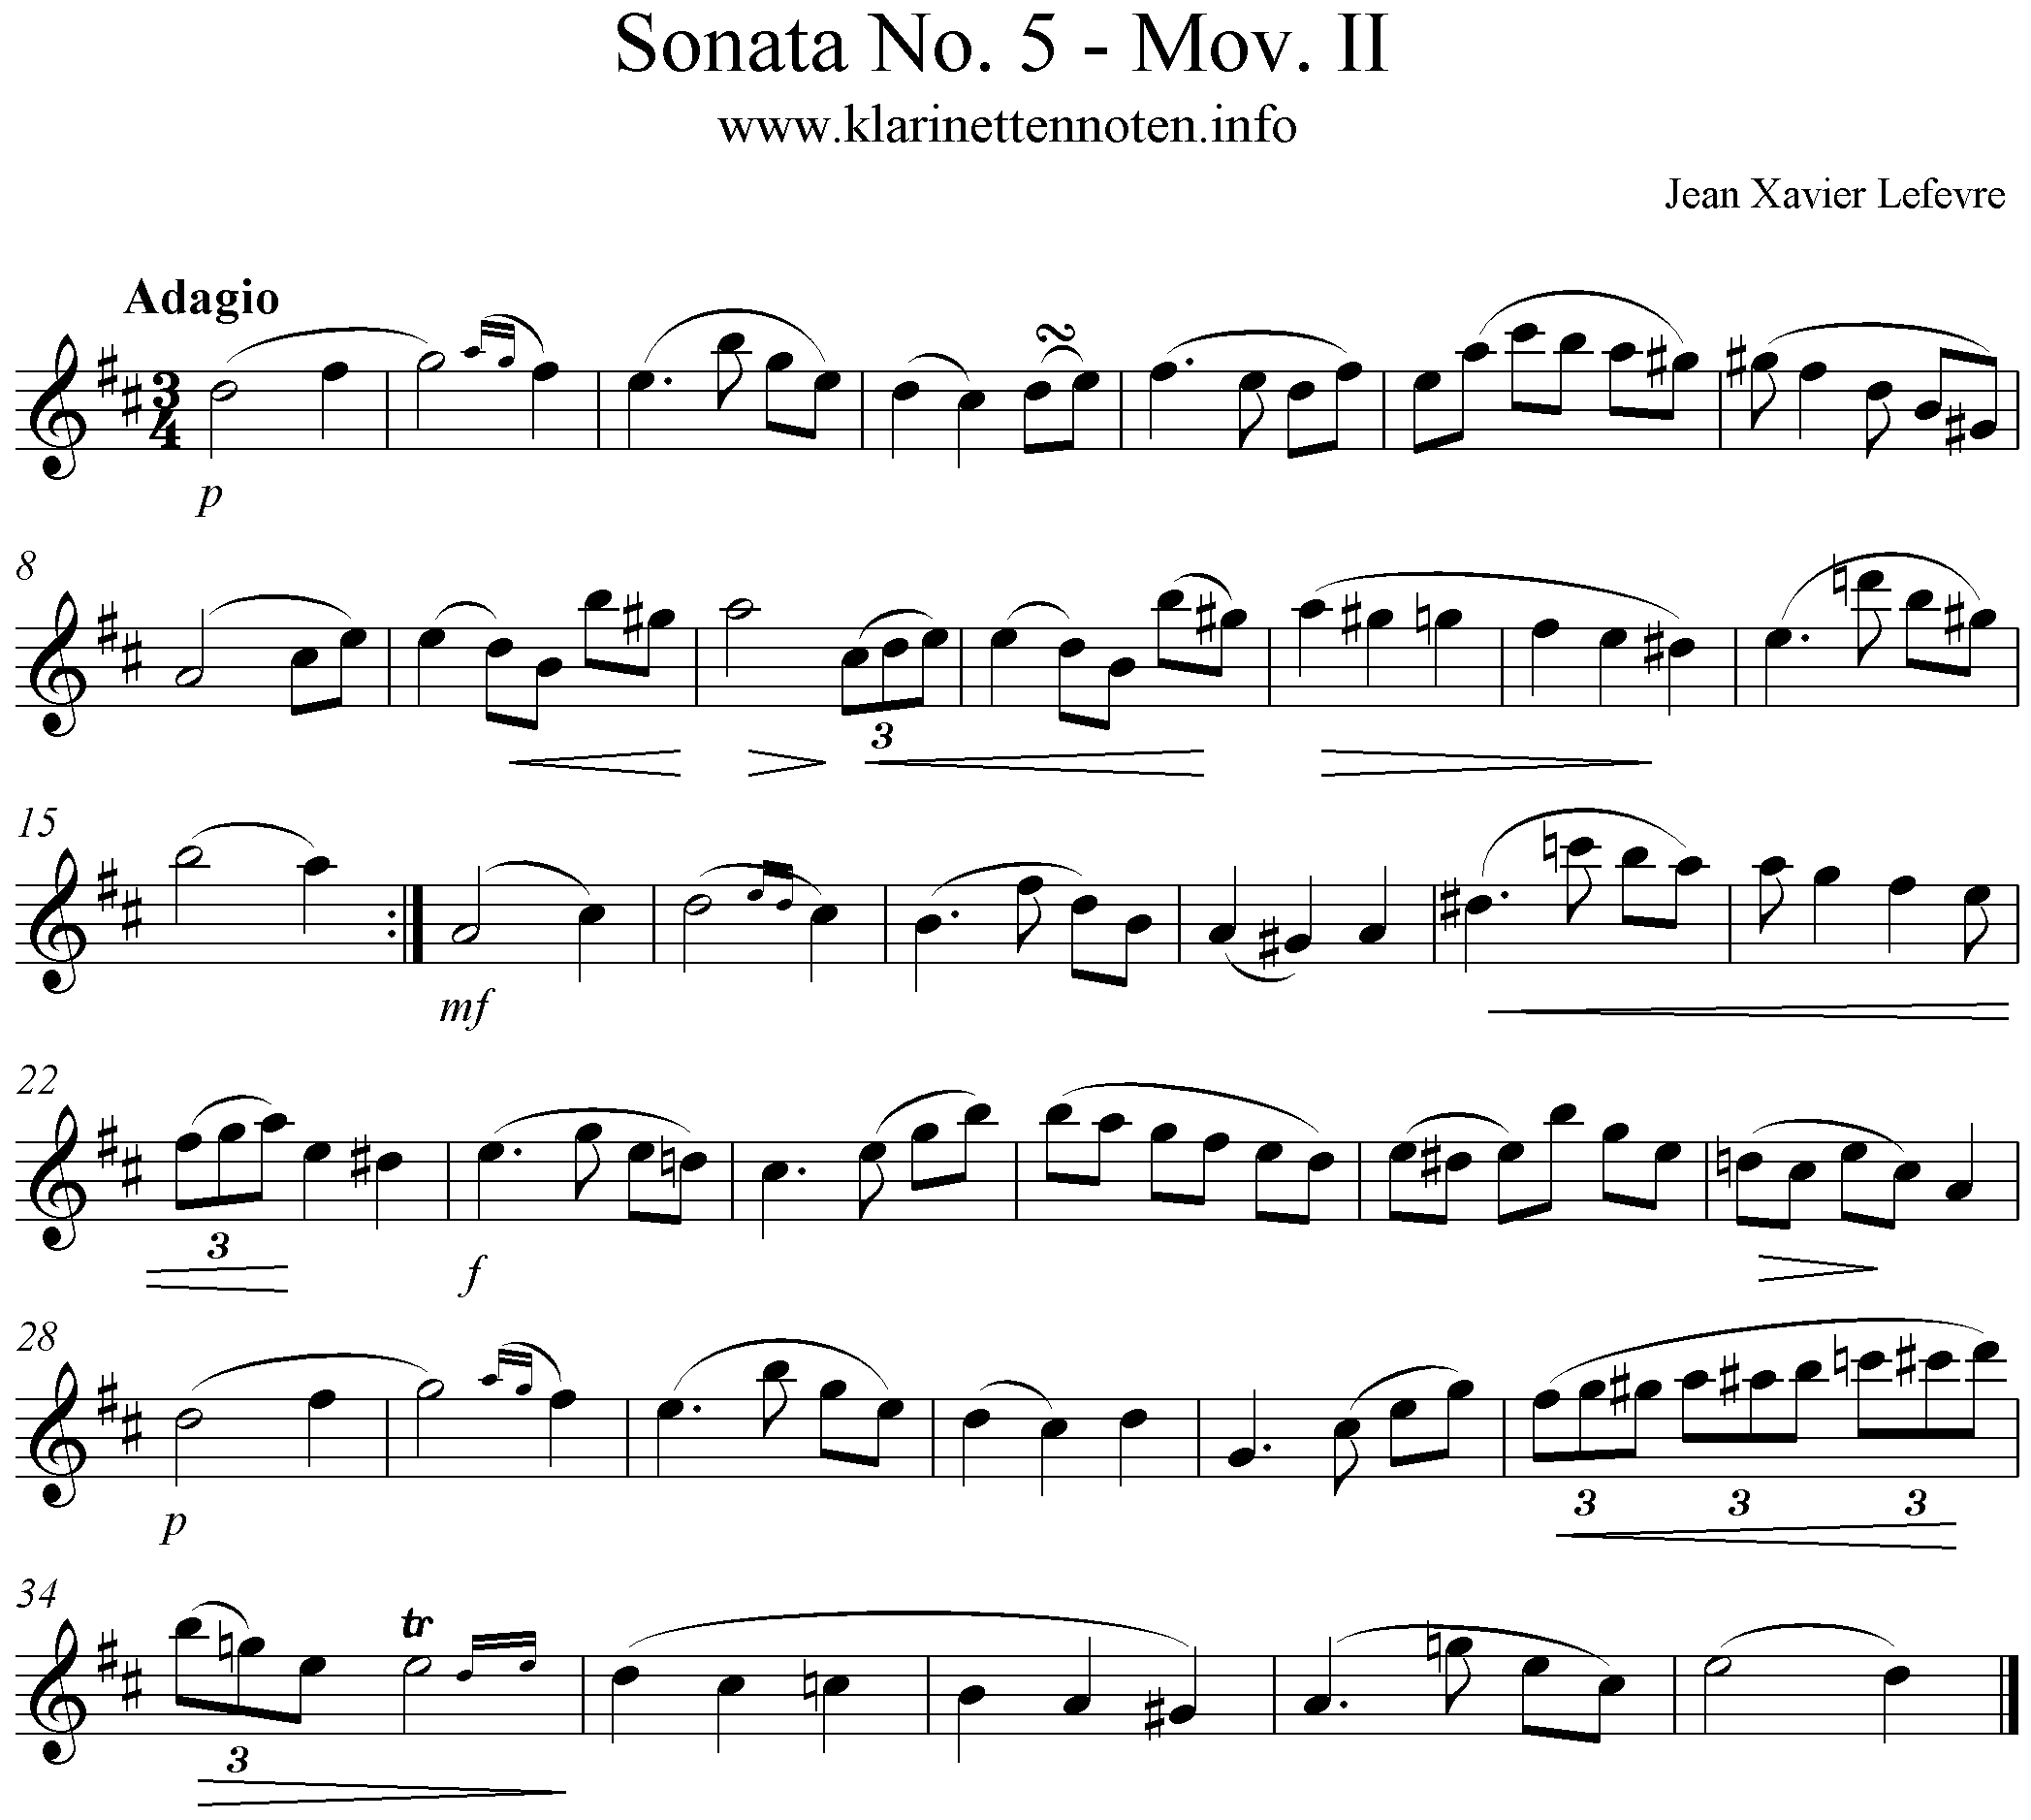 Lefevre Clarinet Sonata No. 5 Mov. II -Adagio